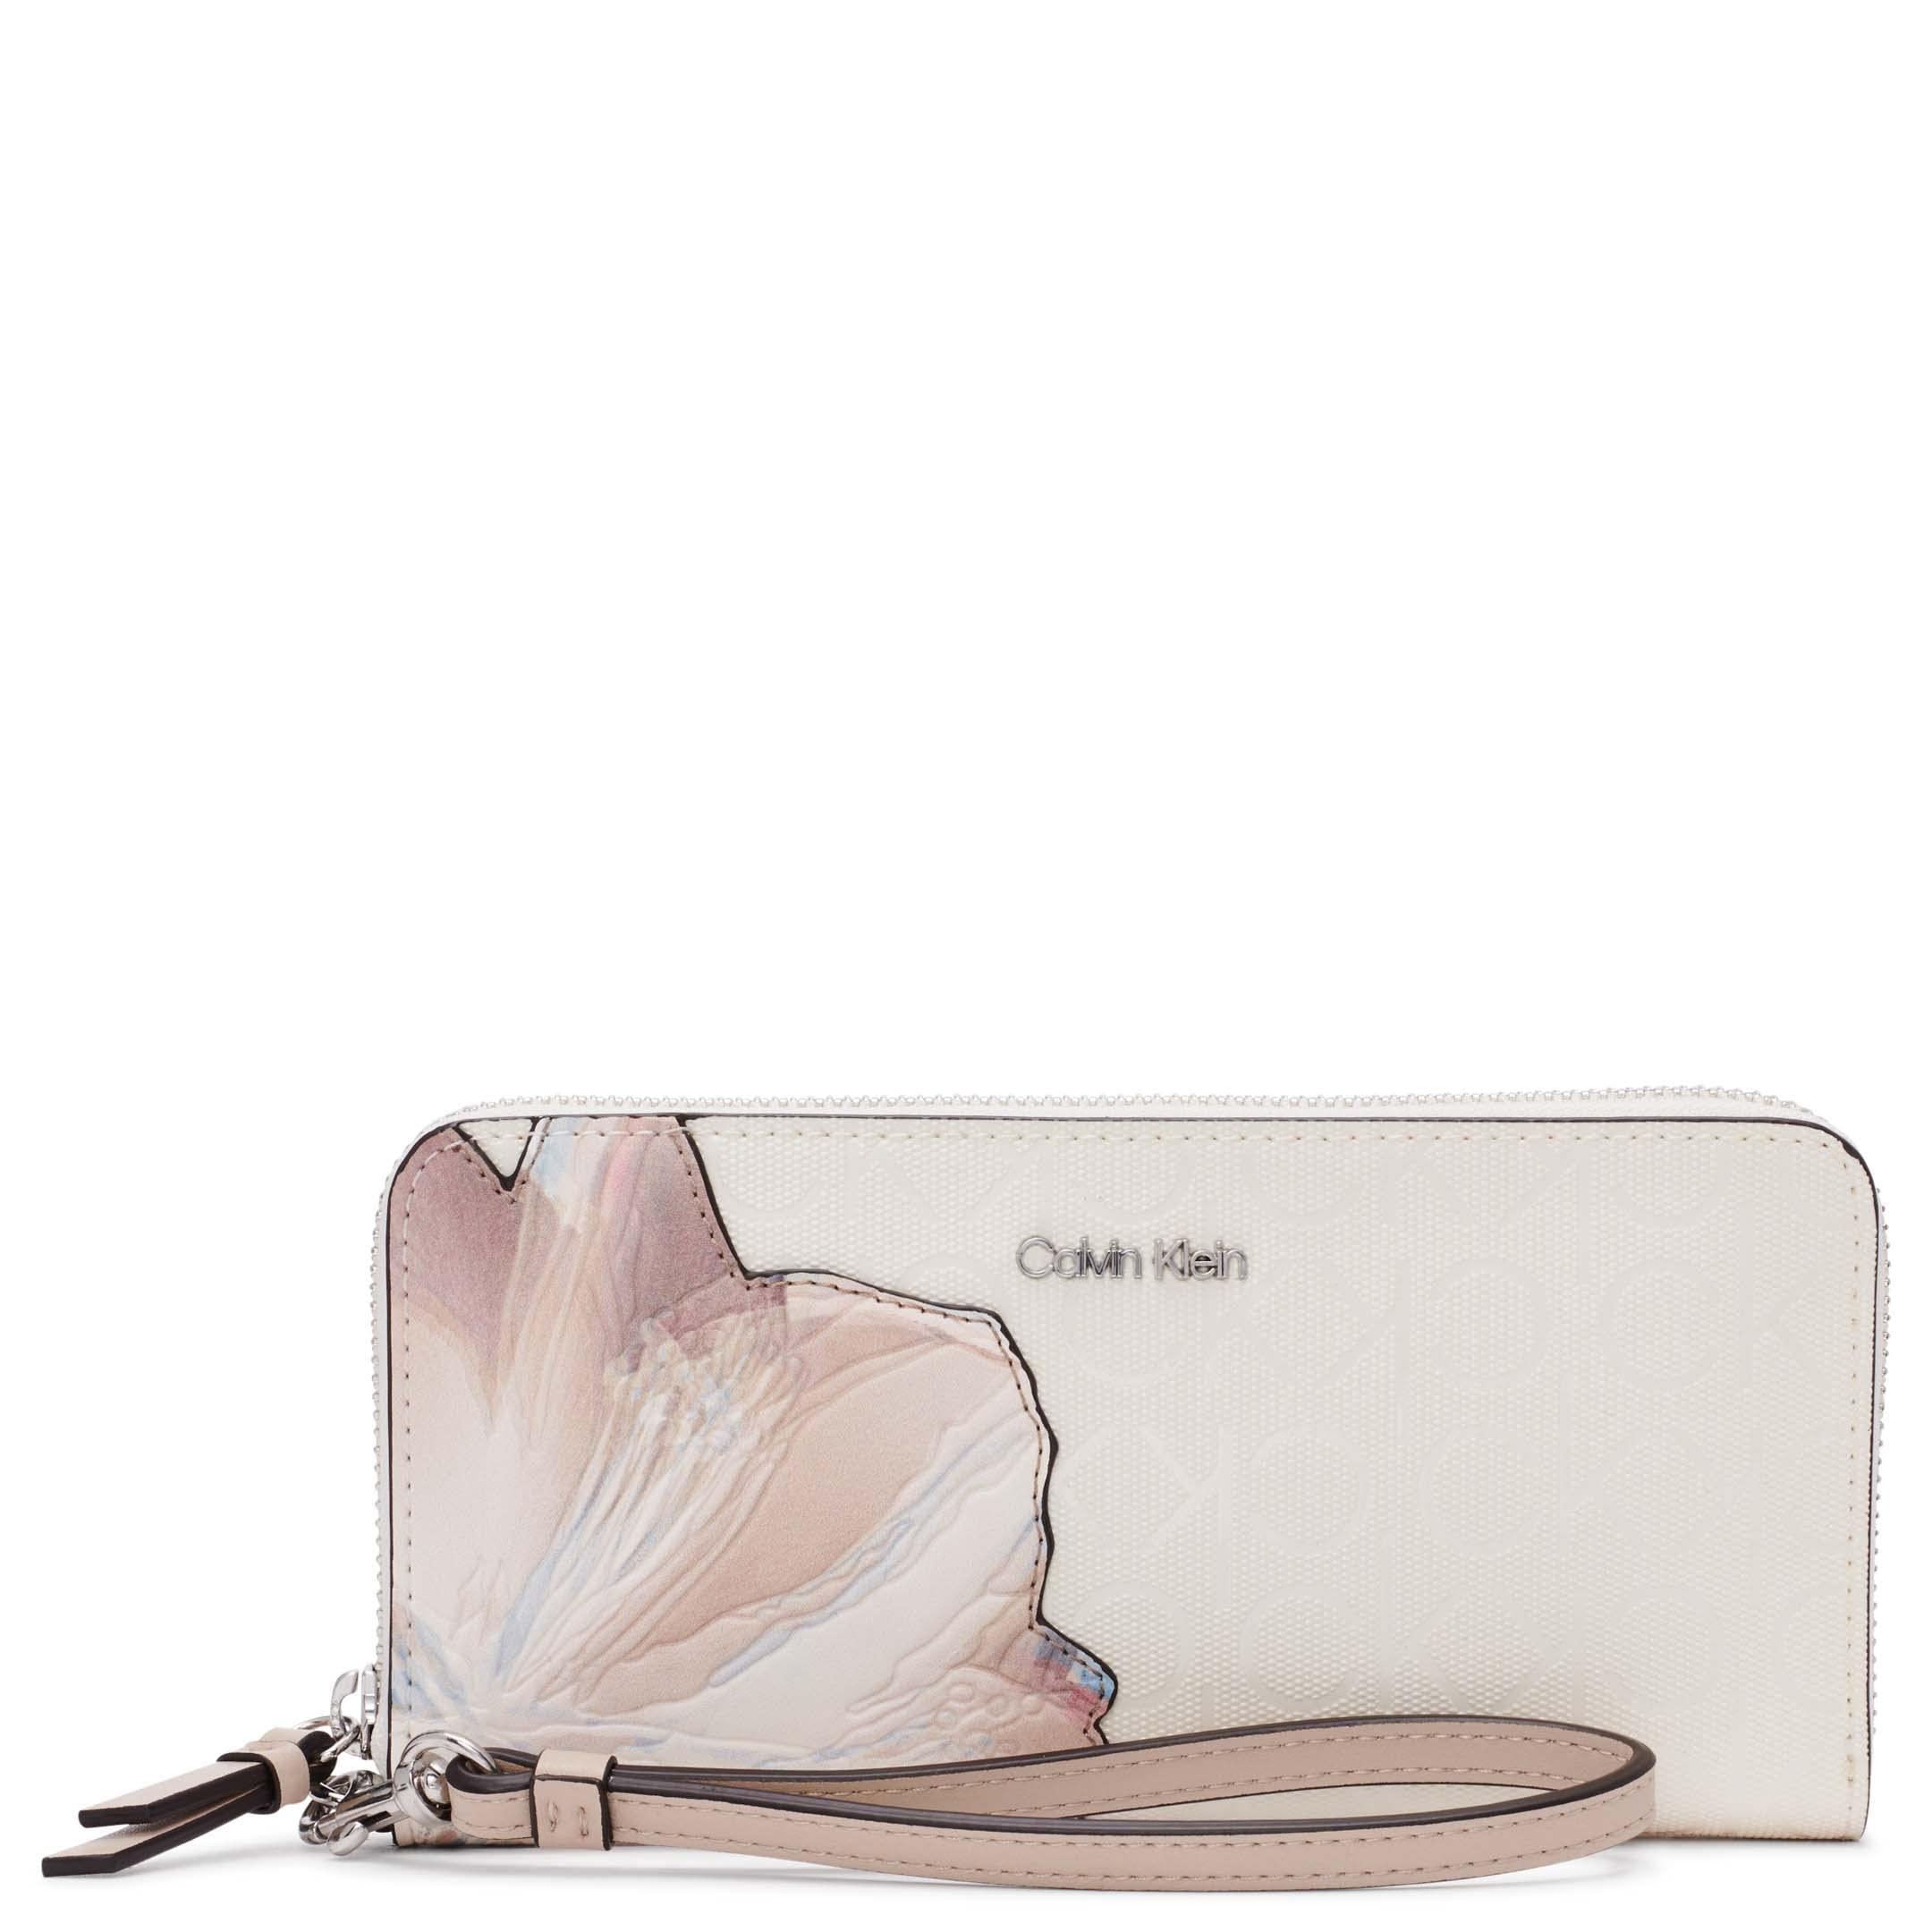 Calvin Klein Key Item Saffiano Continental Zip Around Wallet With